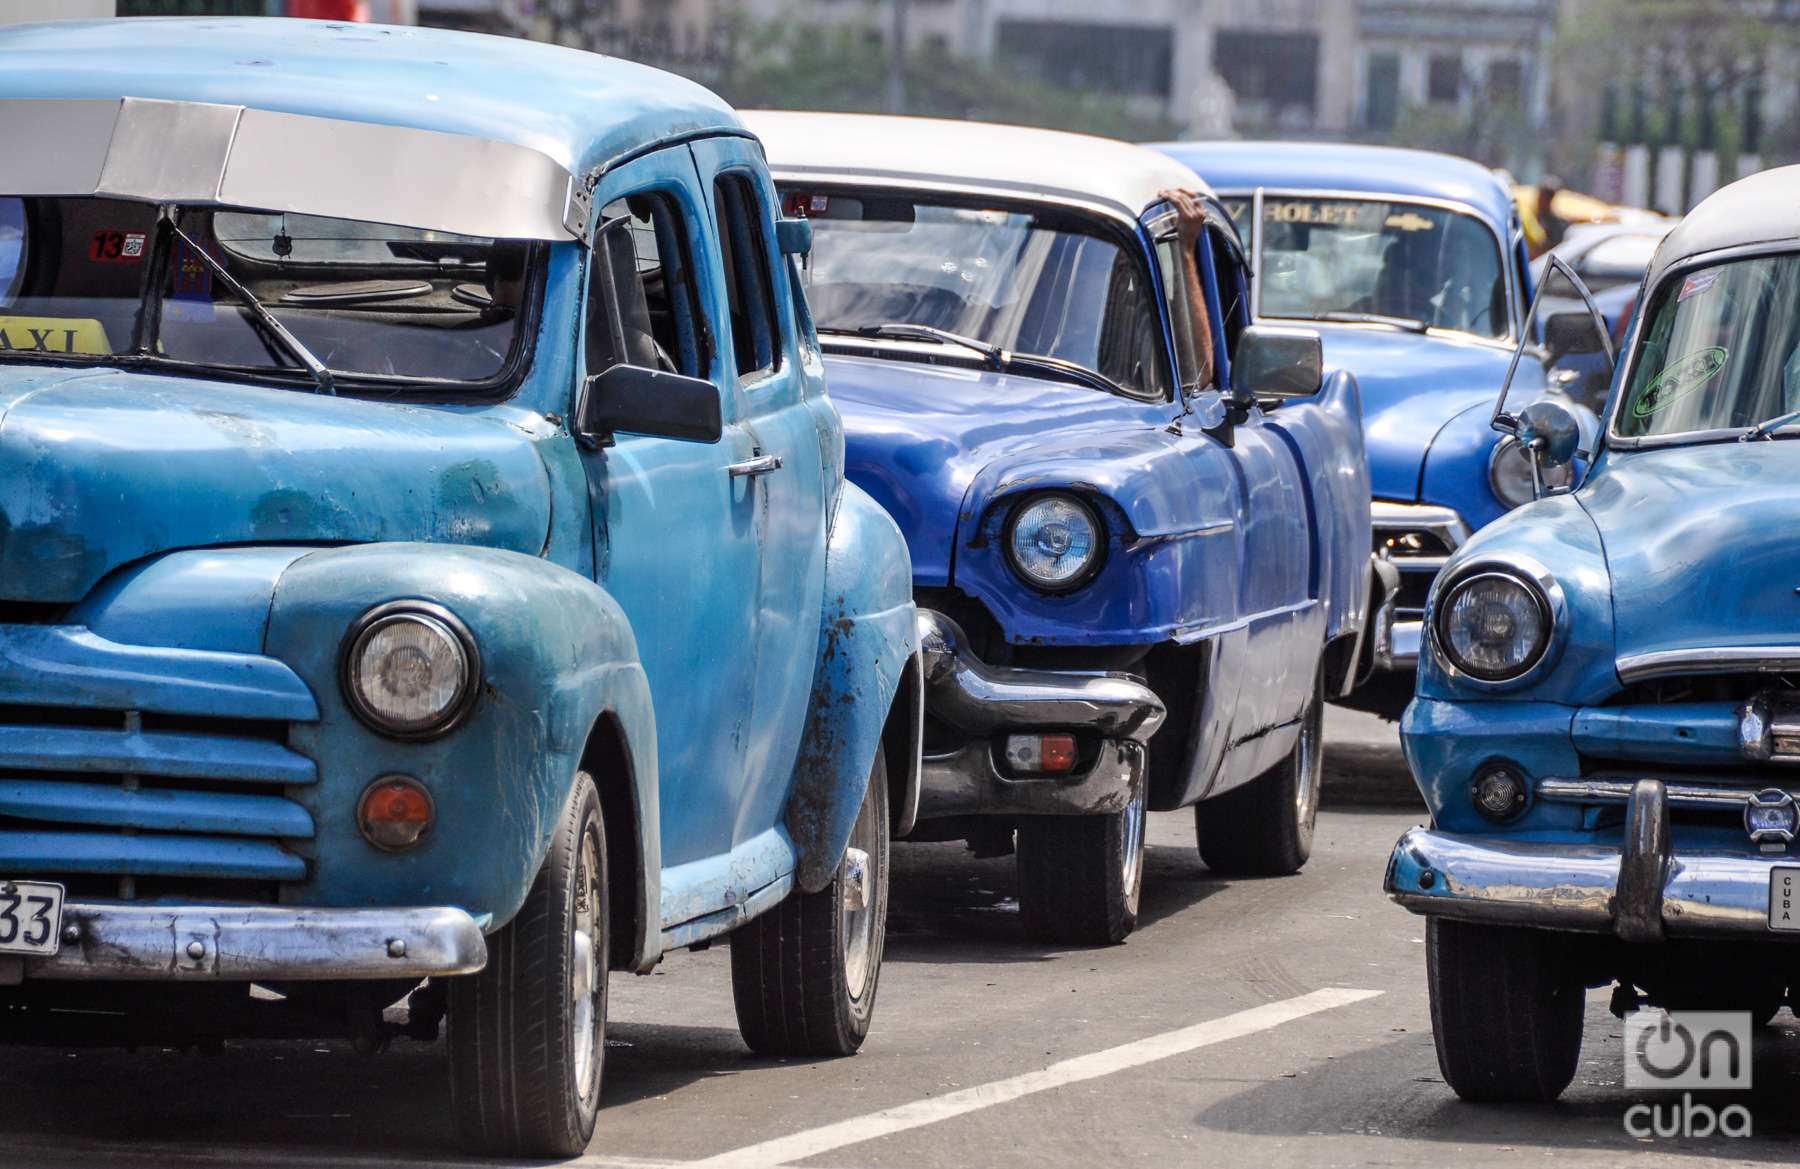 Vintage cars in Havana